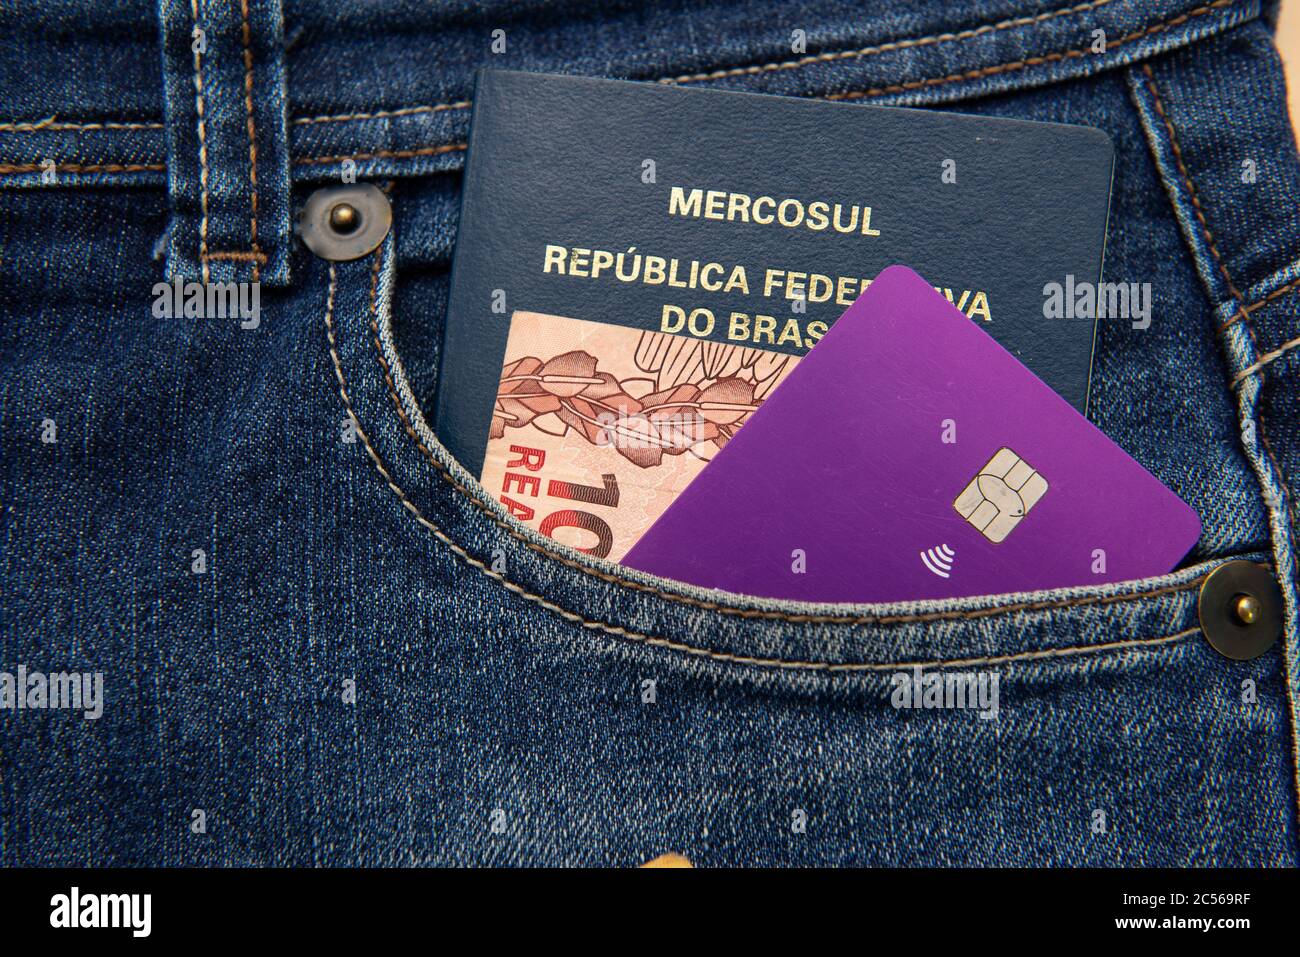 Nahaufnahme von brasilianischen Pass, Banknoten und Kreditkarte in Hosentasche. Übersetzen: Mercosur - Föderative Republik Brasilien - Pass. Stockfoto